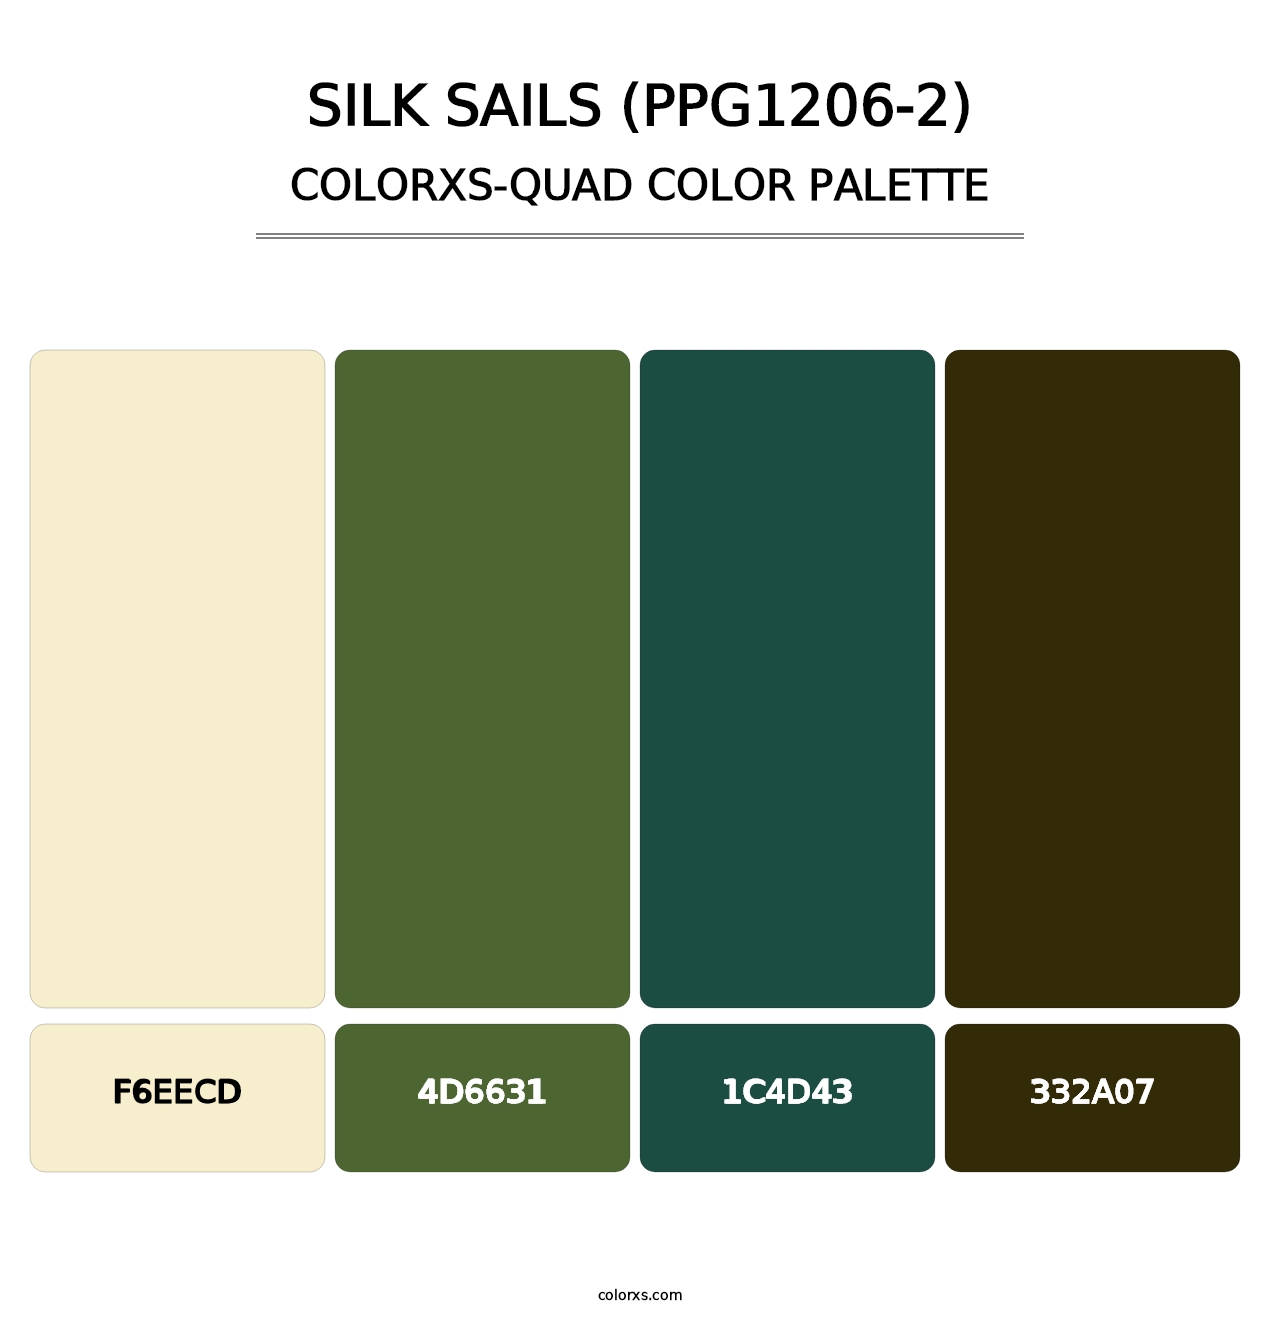 Silk Sails (PPG1206-2) - Colorxs Quad Palette